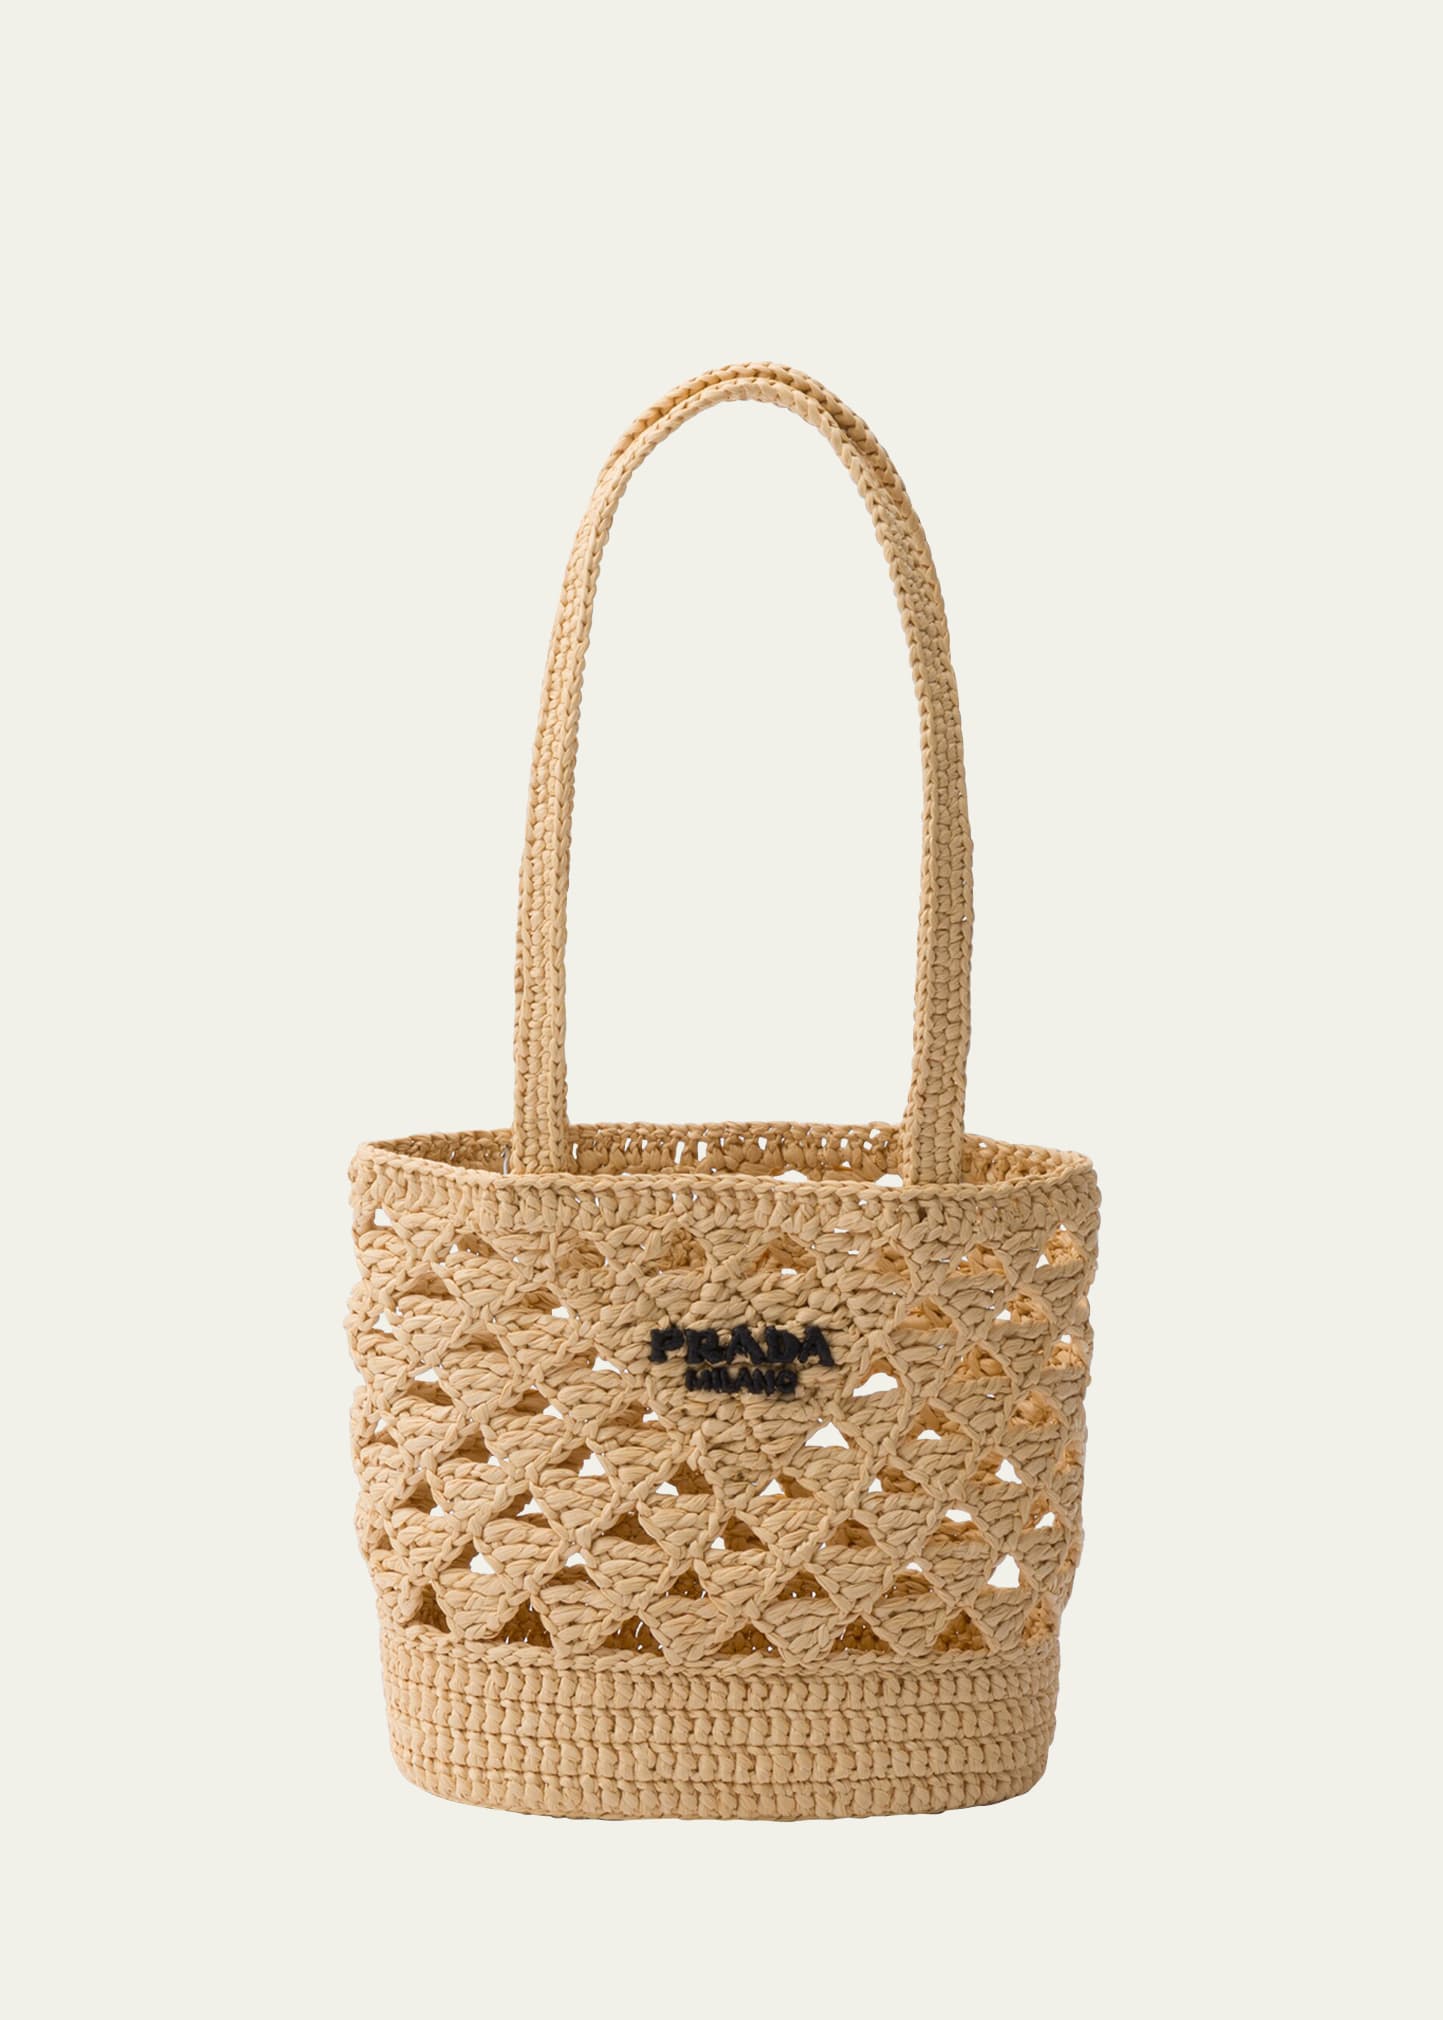 Prada Women's Woven Fabric Crochet Shoulder Bag In Beige Khaki